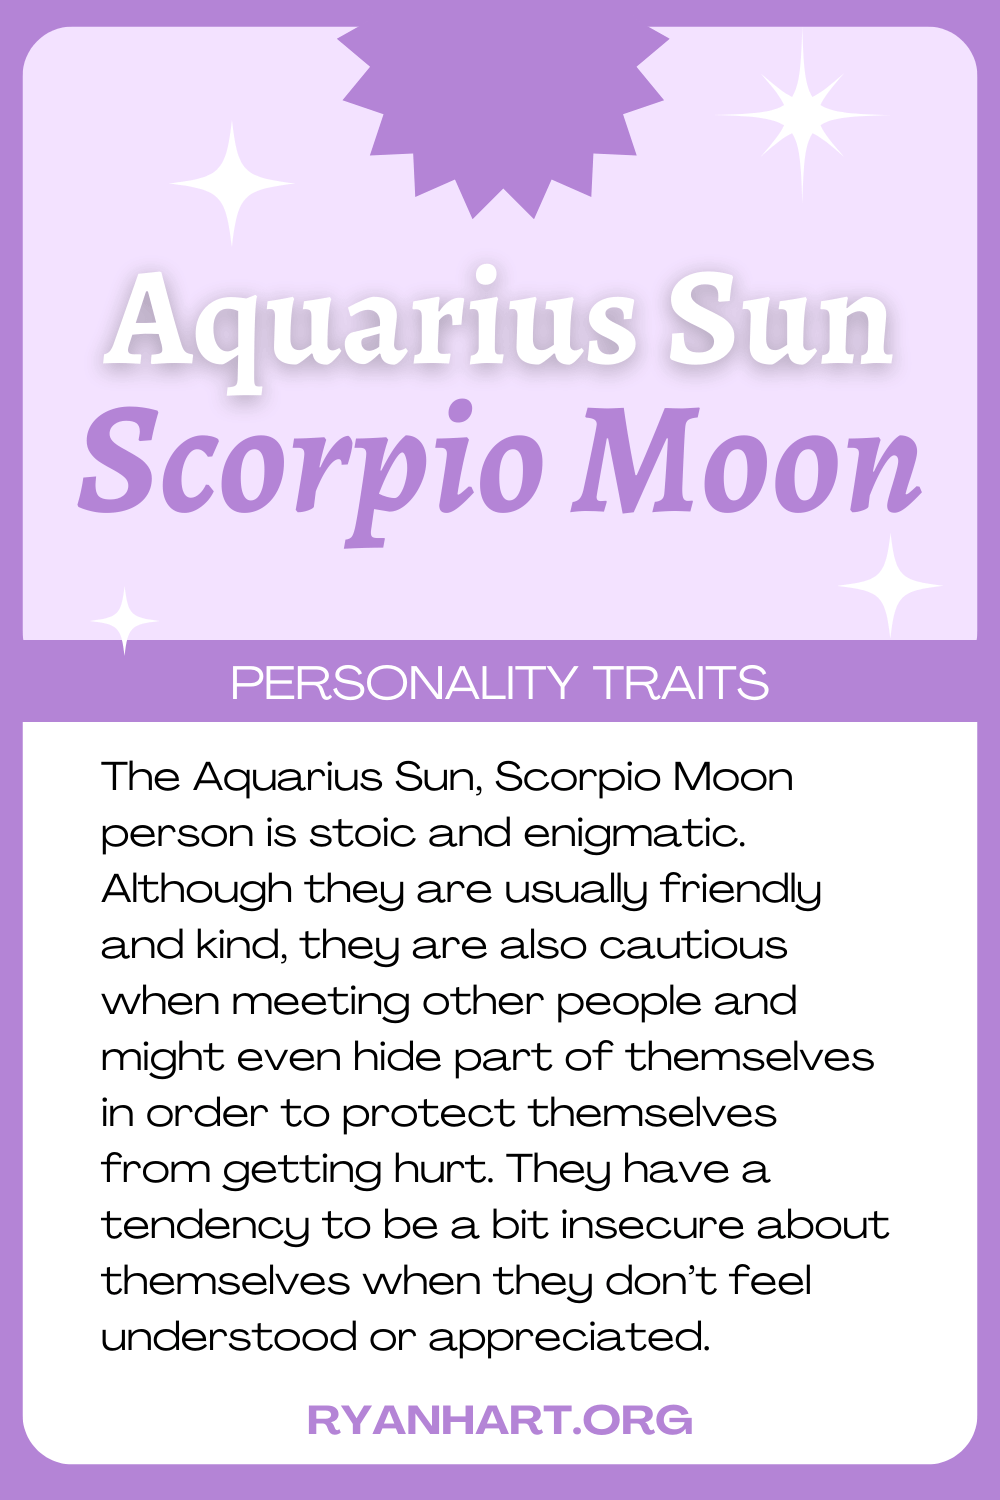 Aquarius Sun Scorpio Moon Description